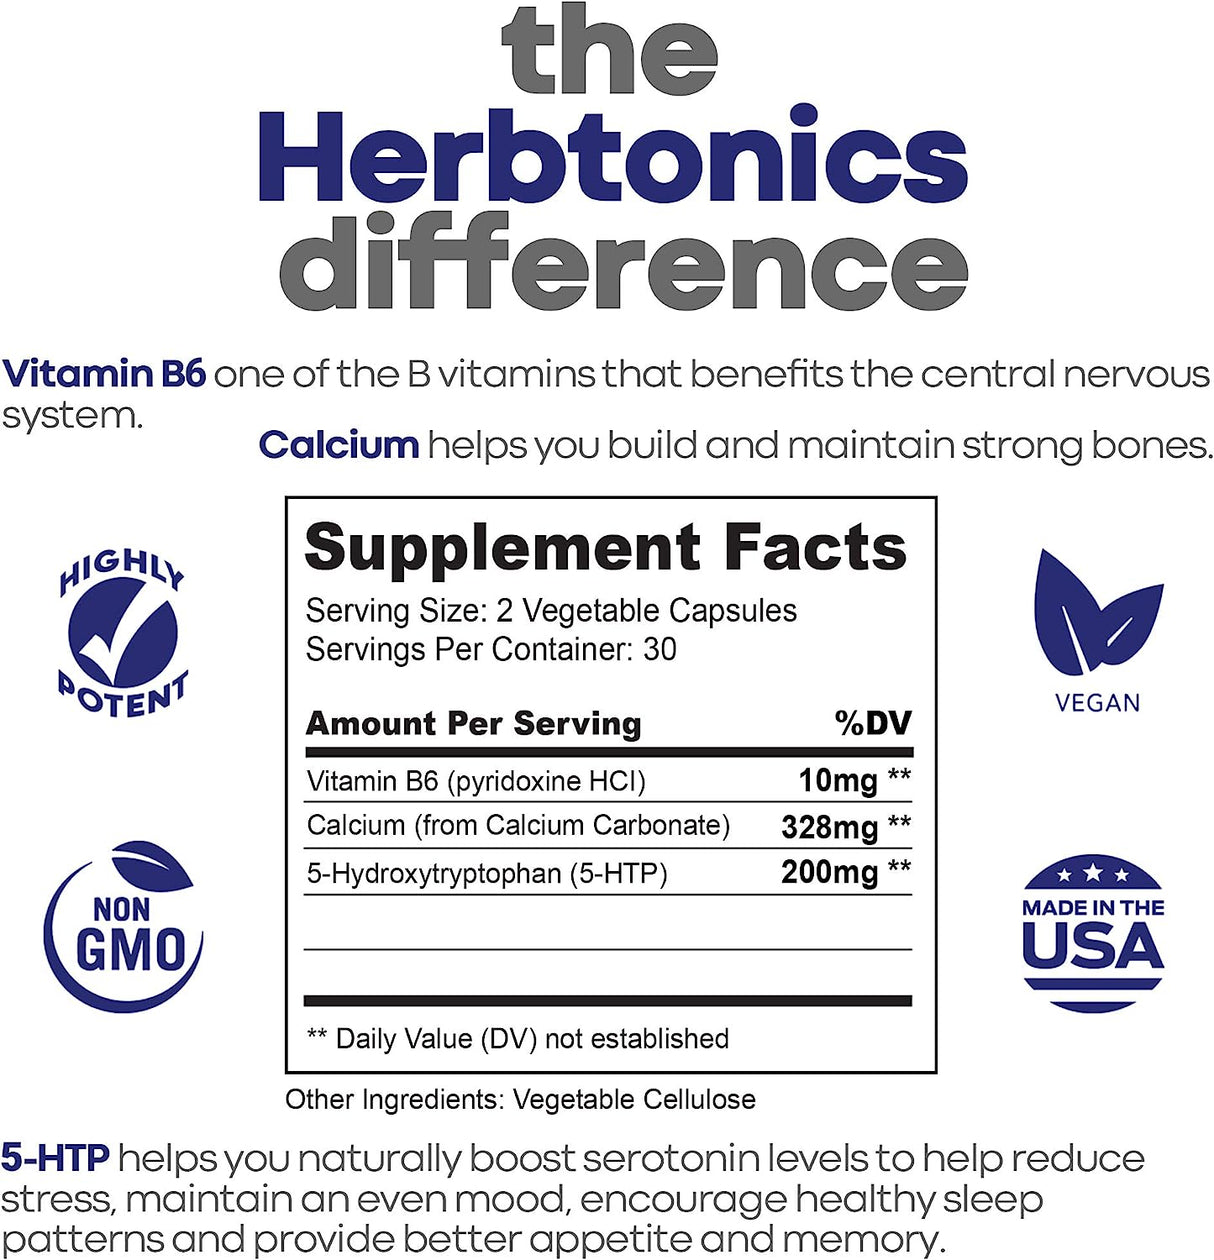 Herbtonics 5 HTP 200Mg. Supplement with Calcium + B6 Cofactor 60 Capsulas - The Red Vitamin MX - Suplementos Alimenticios - HERBTONICS